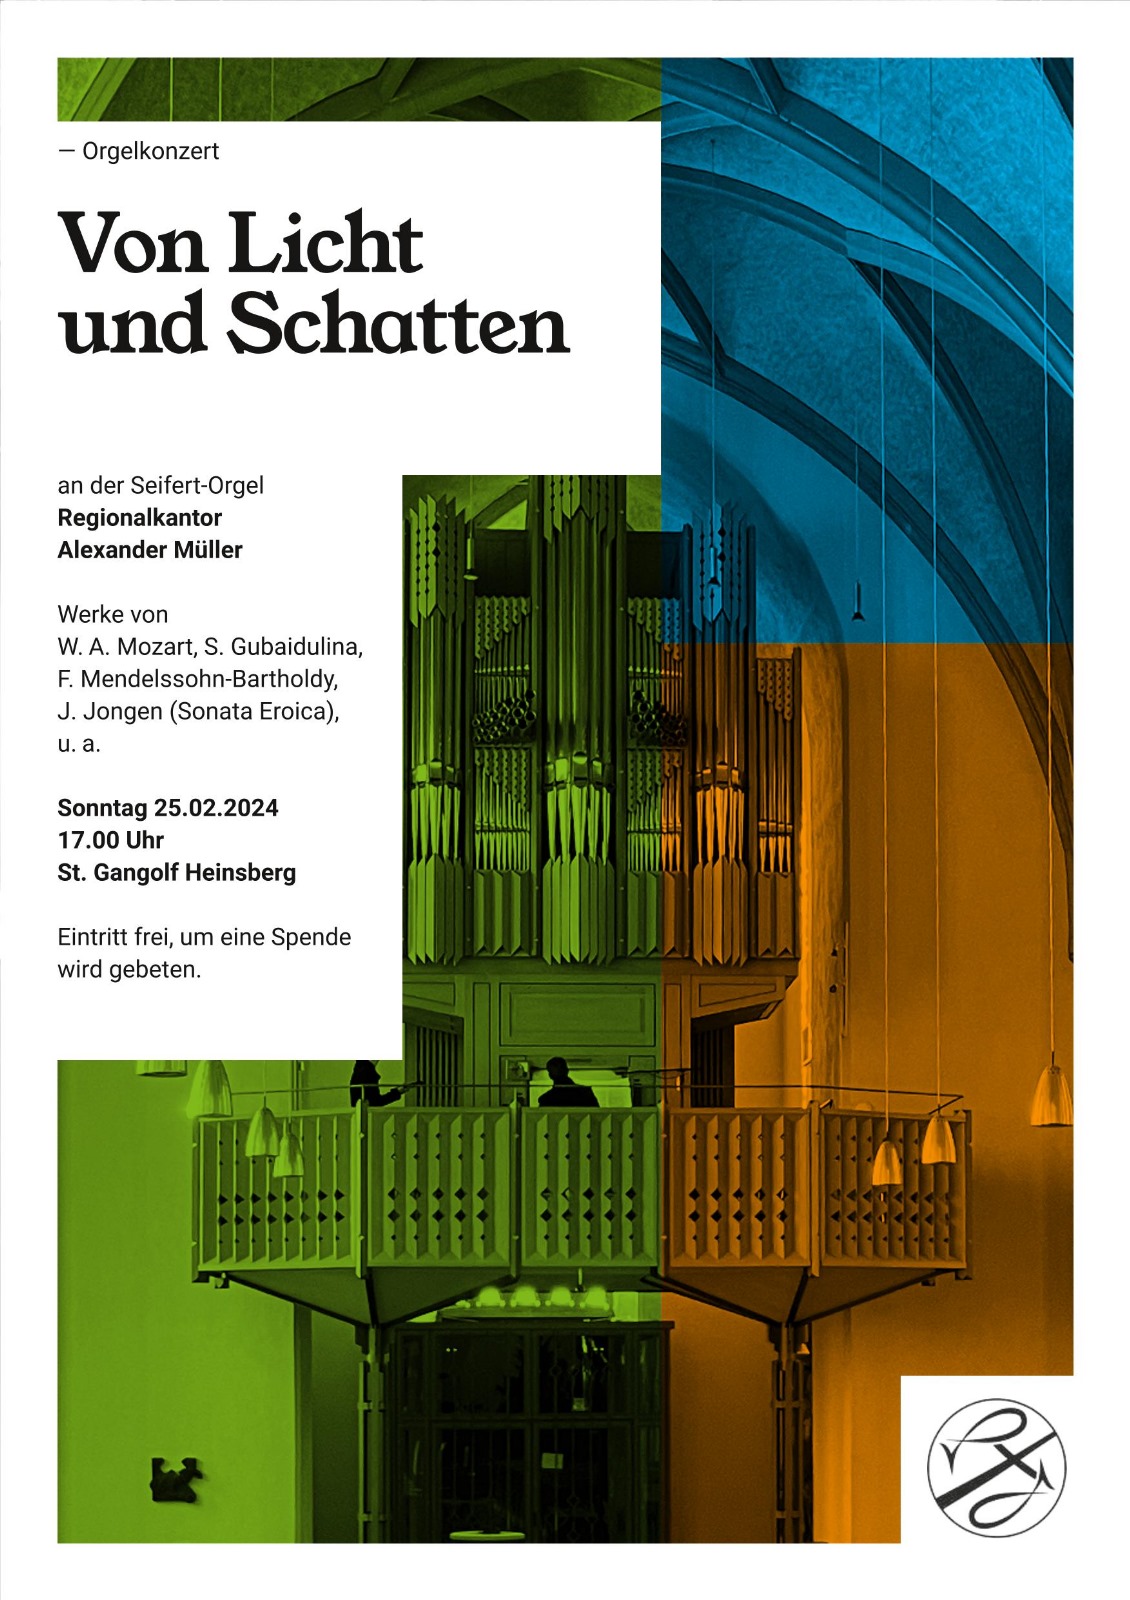 25.02.24 Orgelkonzert (c) Alexander Müller